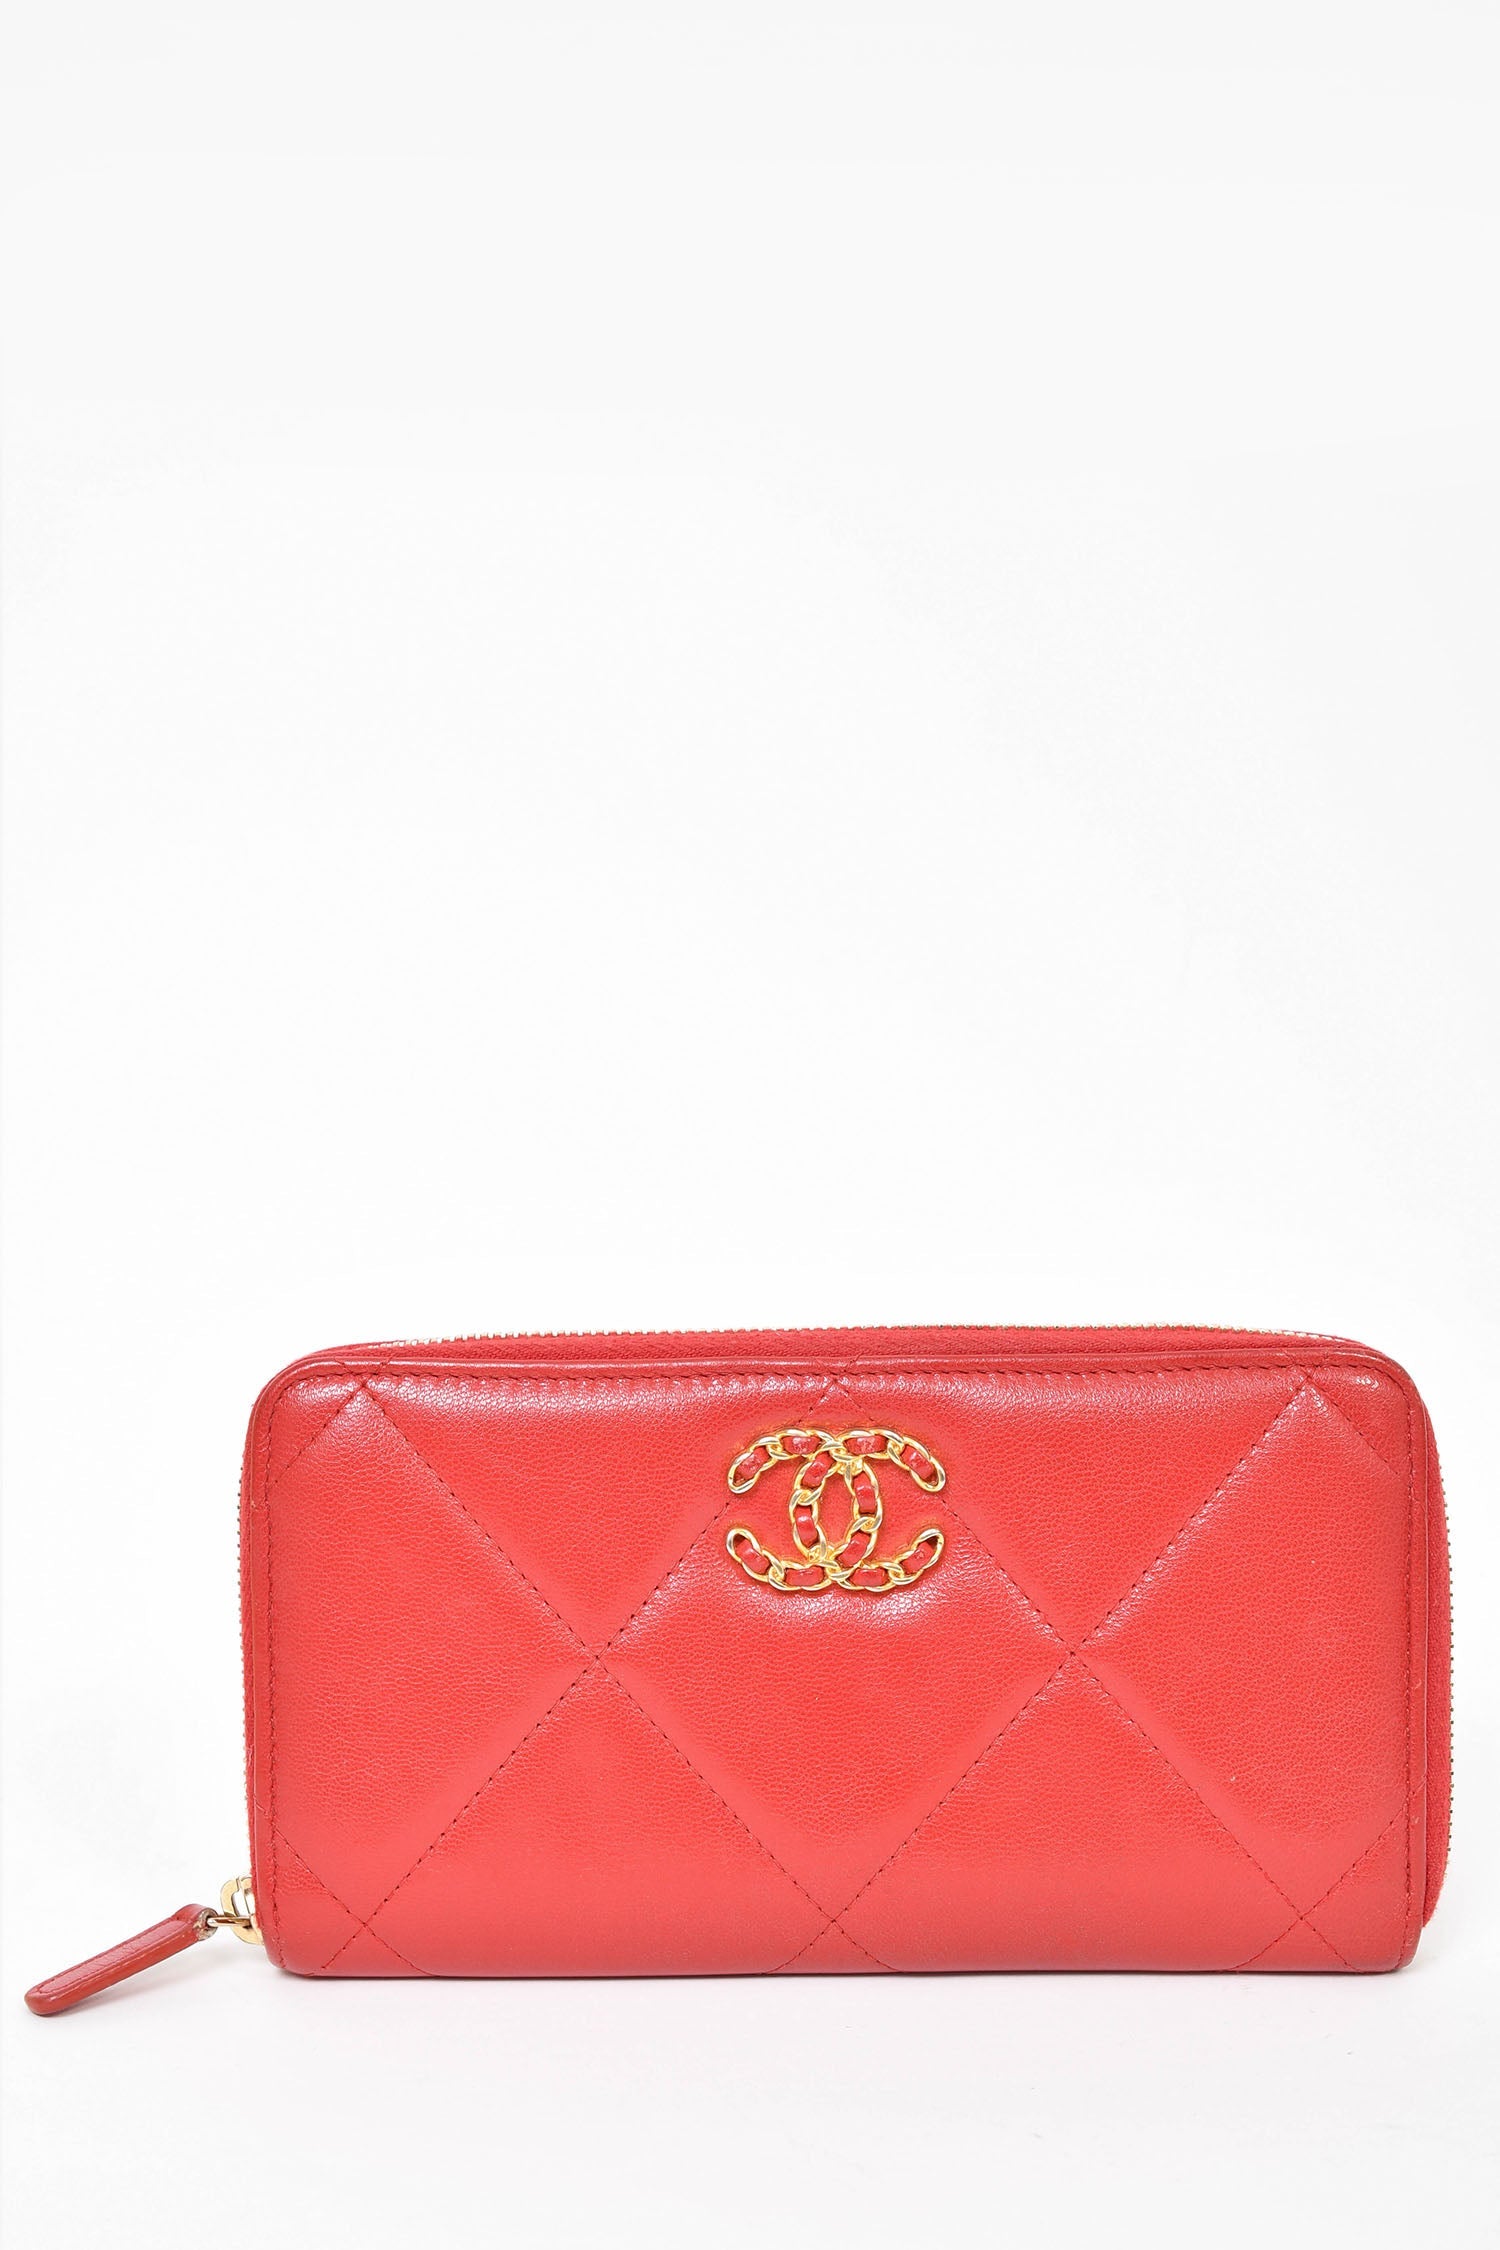 Chanel 2020 Red Lambskin '19' Long Zip Wallet – Mine & Yours